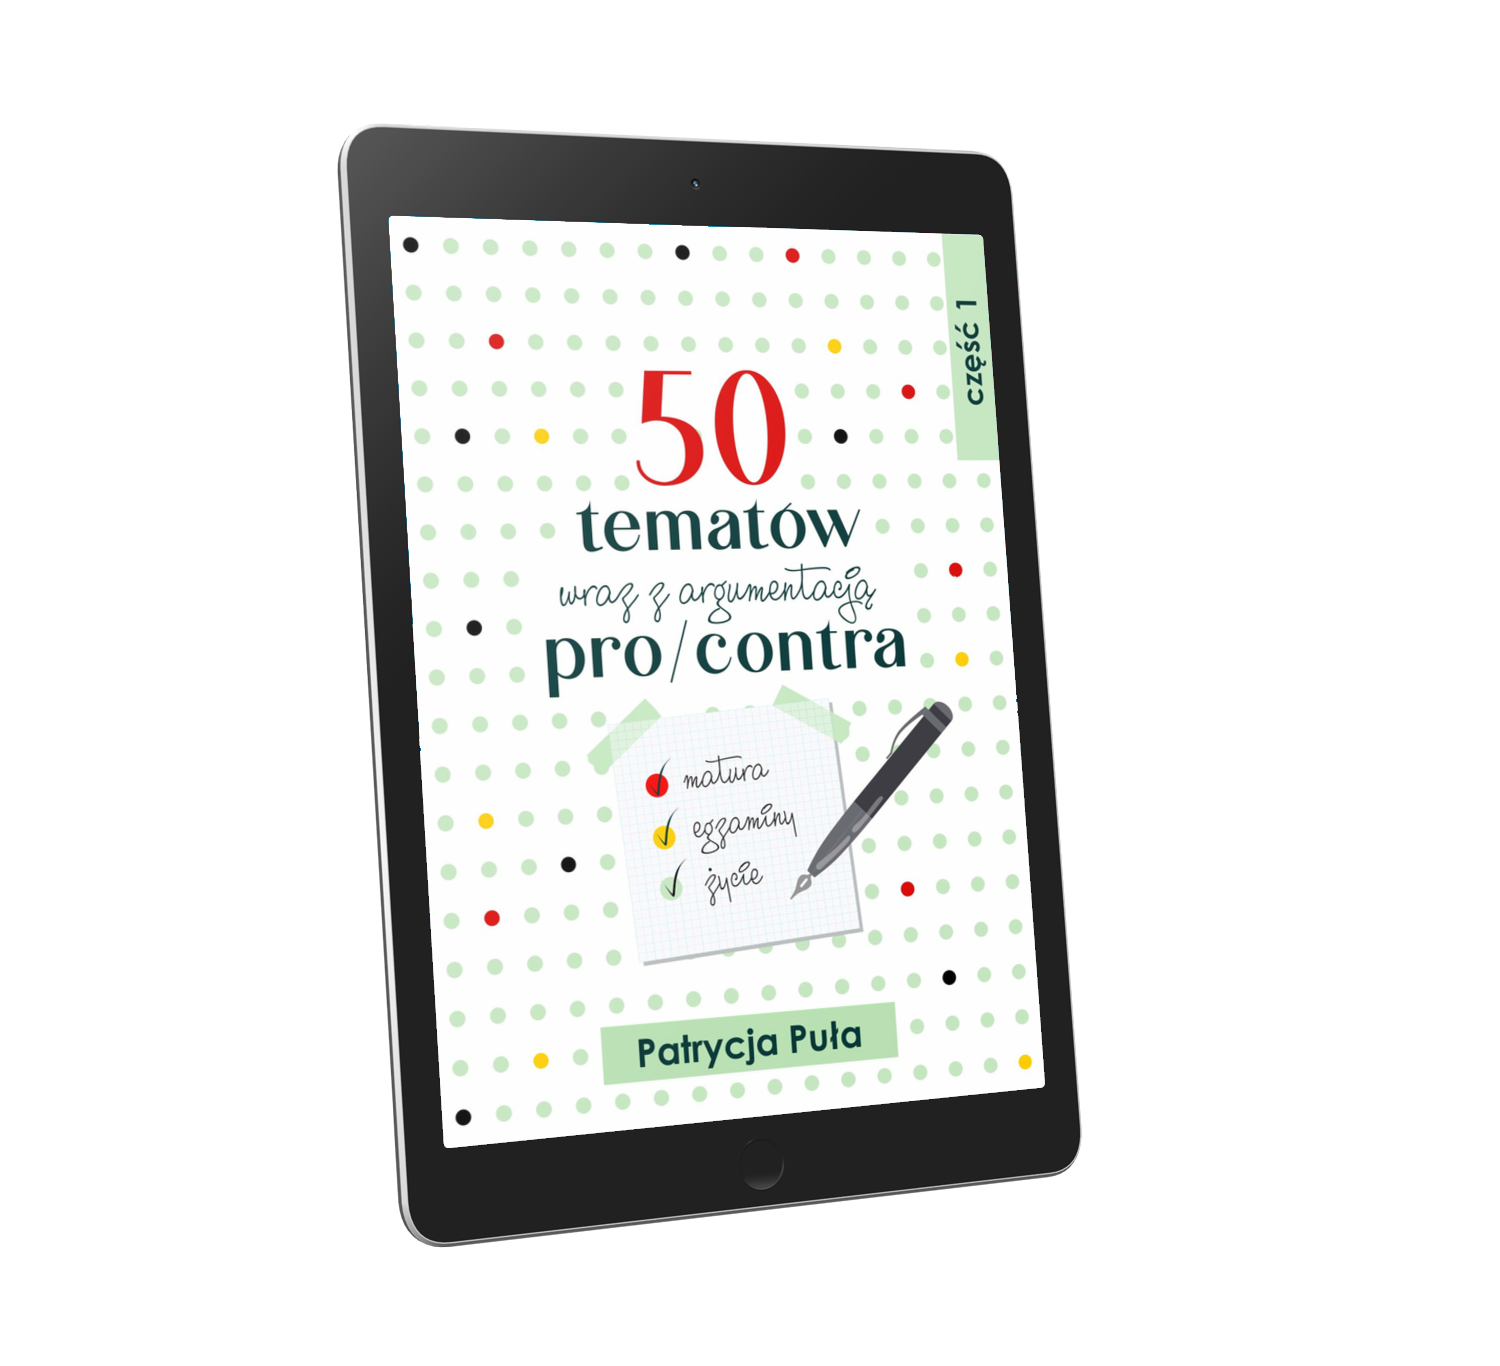 E-book “50 tematÃ³w pro/contra wraz z argumentacjÄ…”